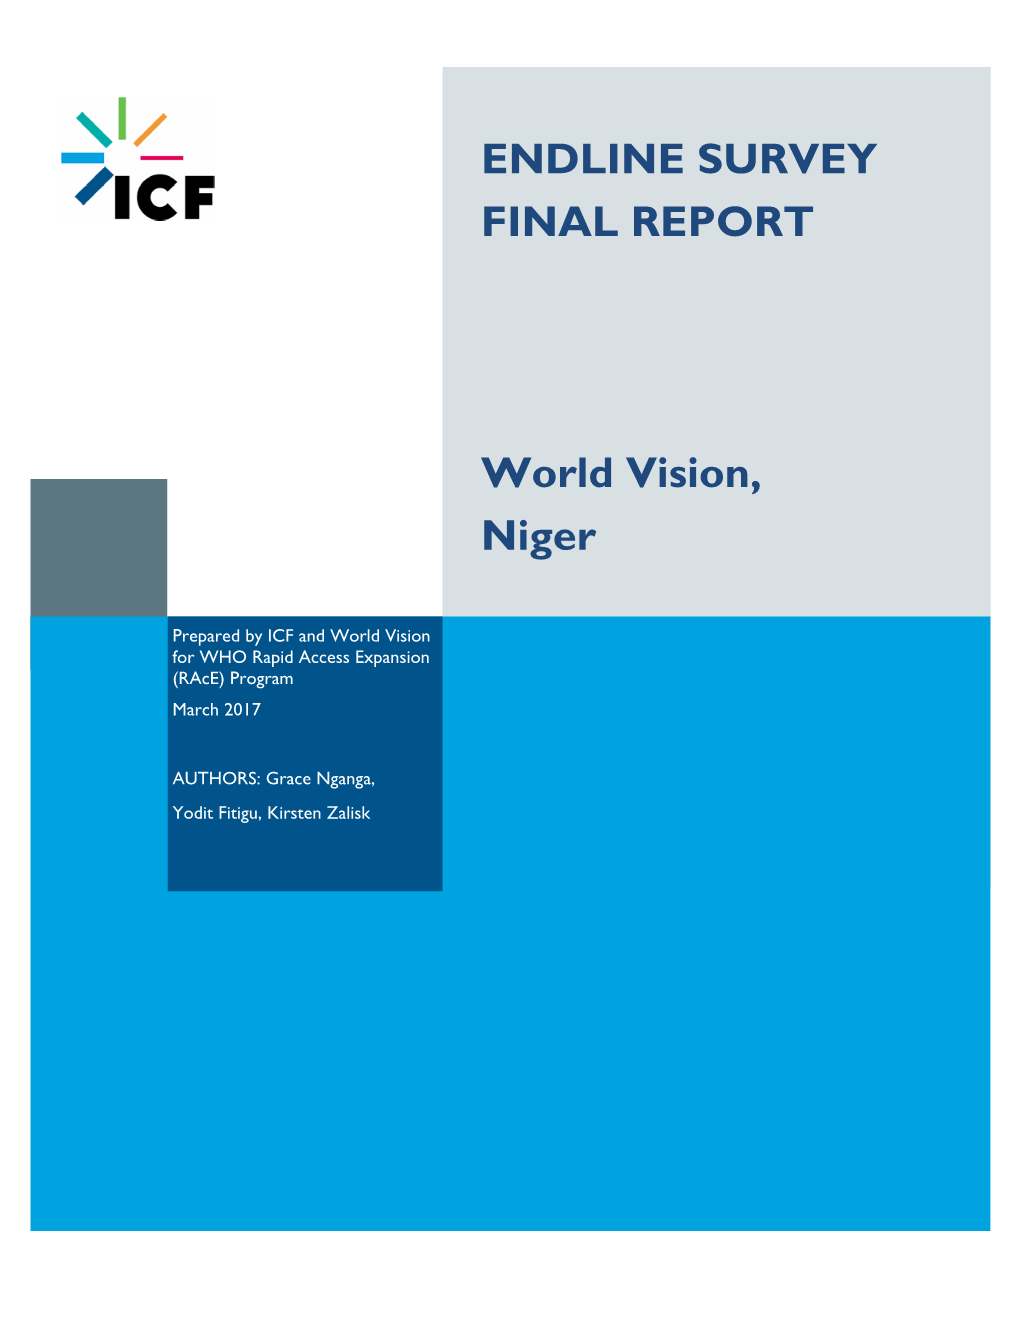 ENDLINE SURVEY FINAL REPORT World Vision, Niger